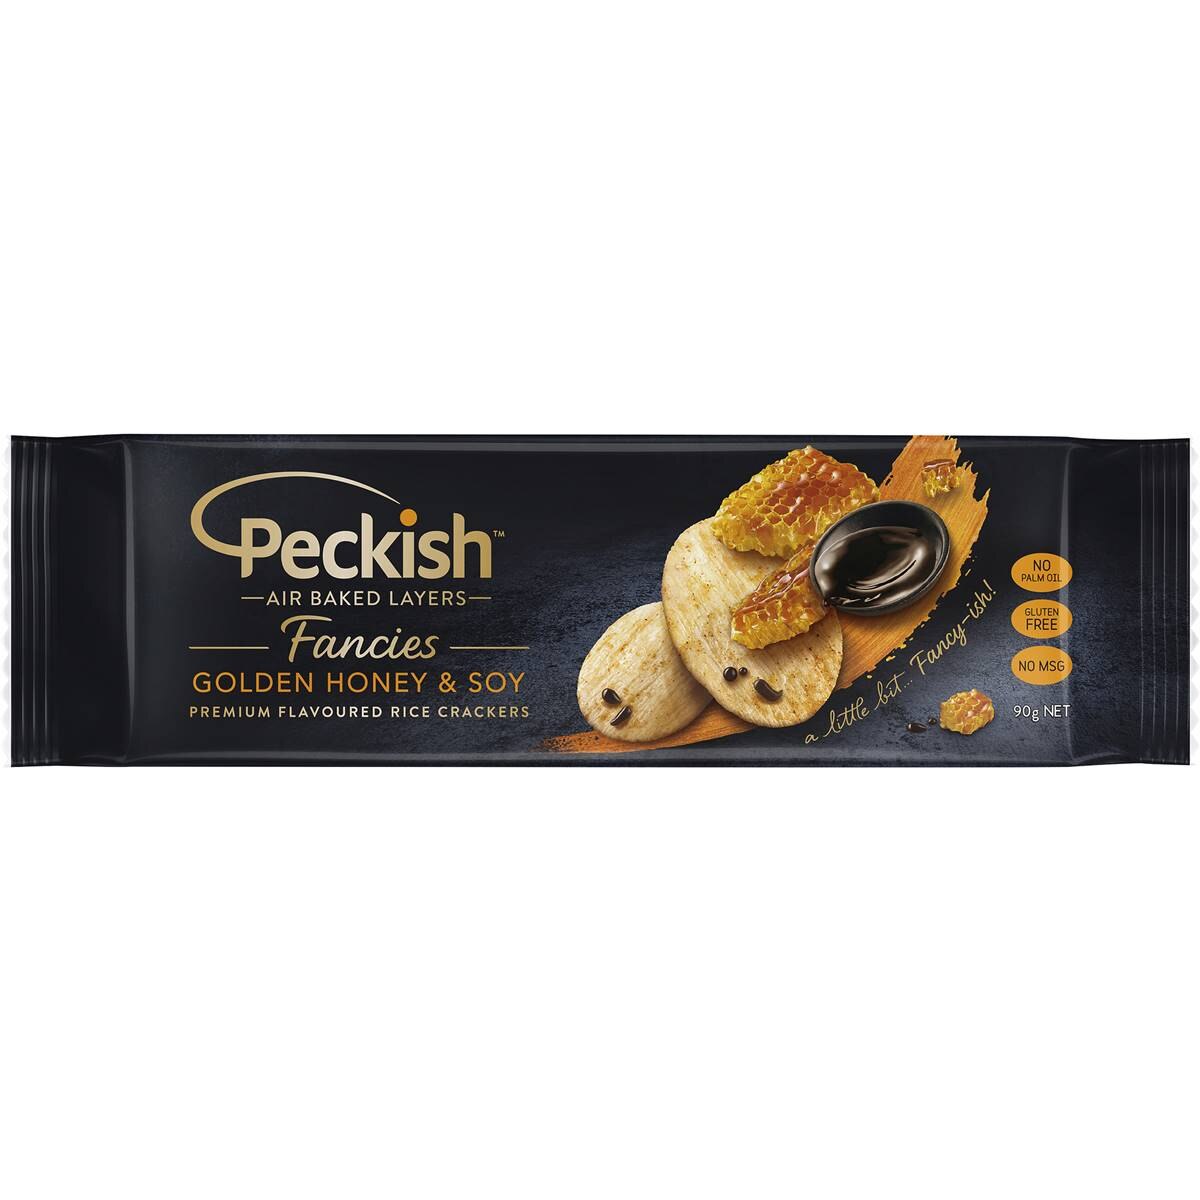 Calories in Peckish Fancies Golden Honey Soy Rice Crackers